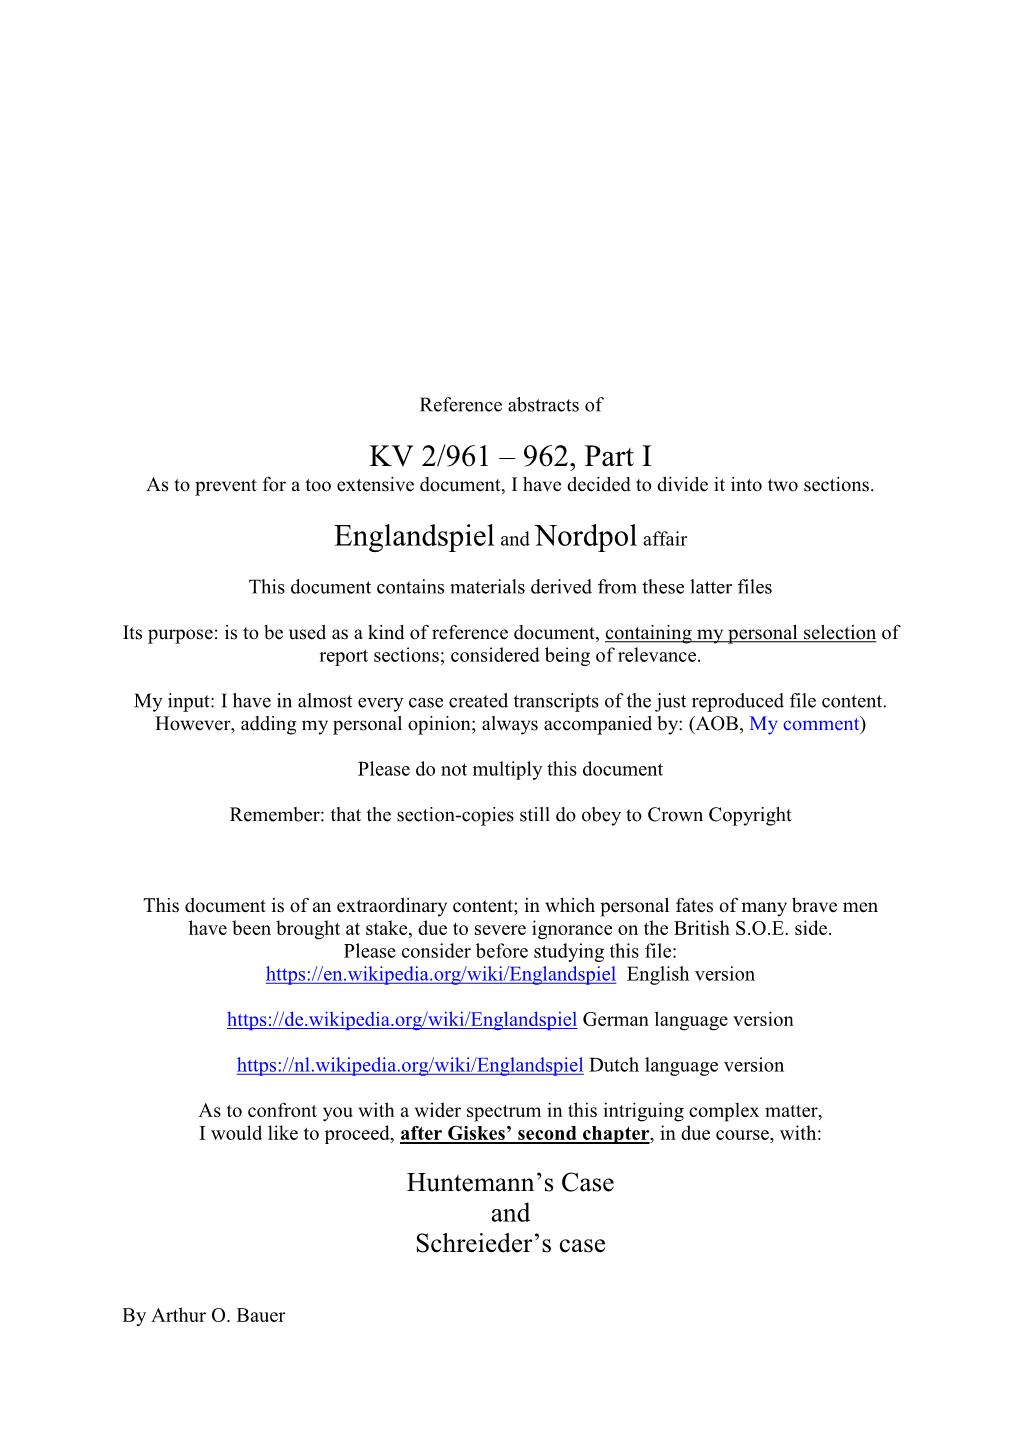 KV 2/961 – 962, Part I Englandspieland Nordpolaffair